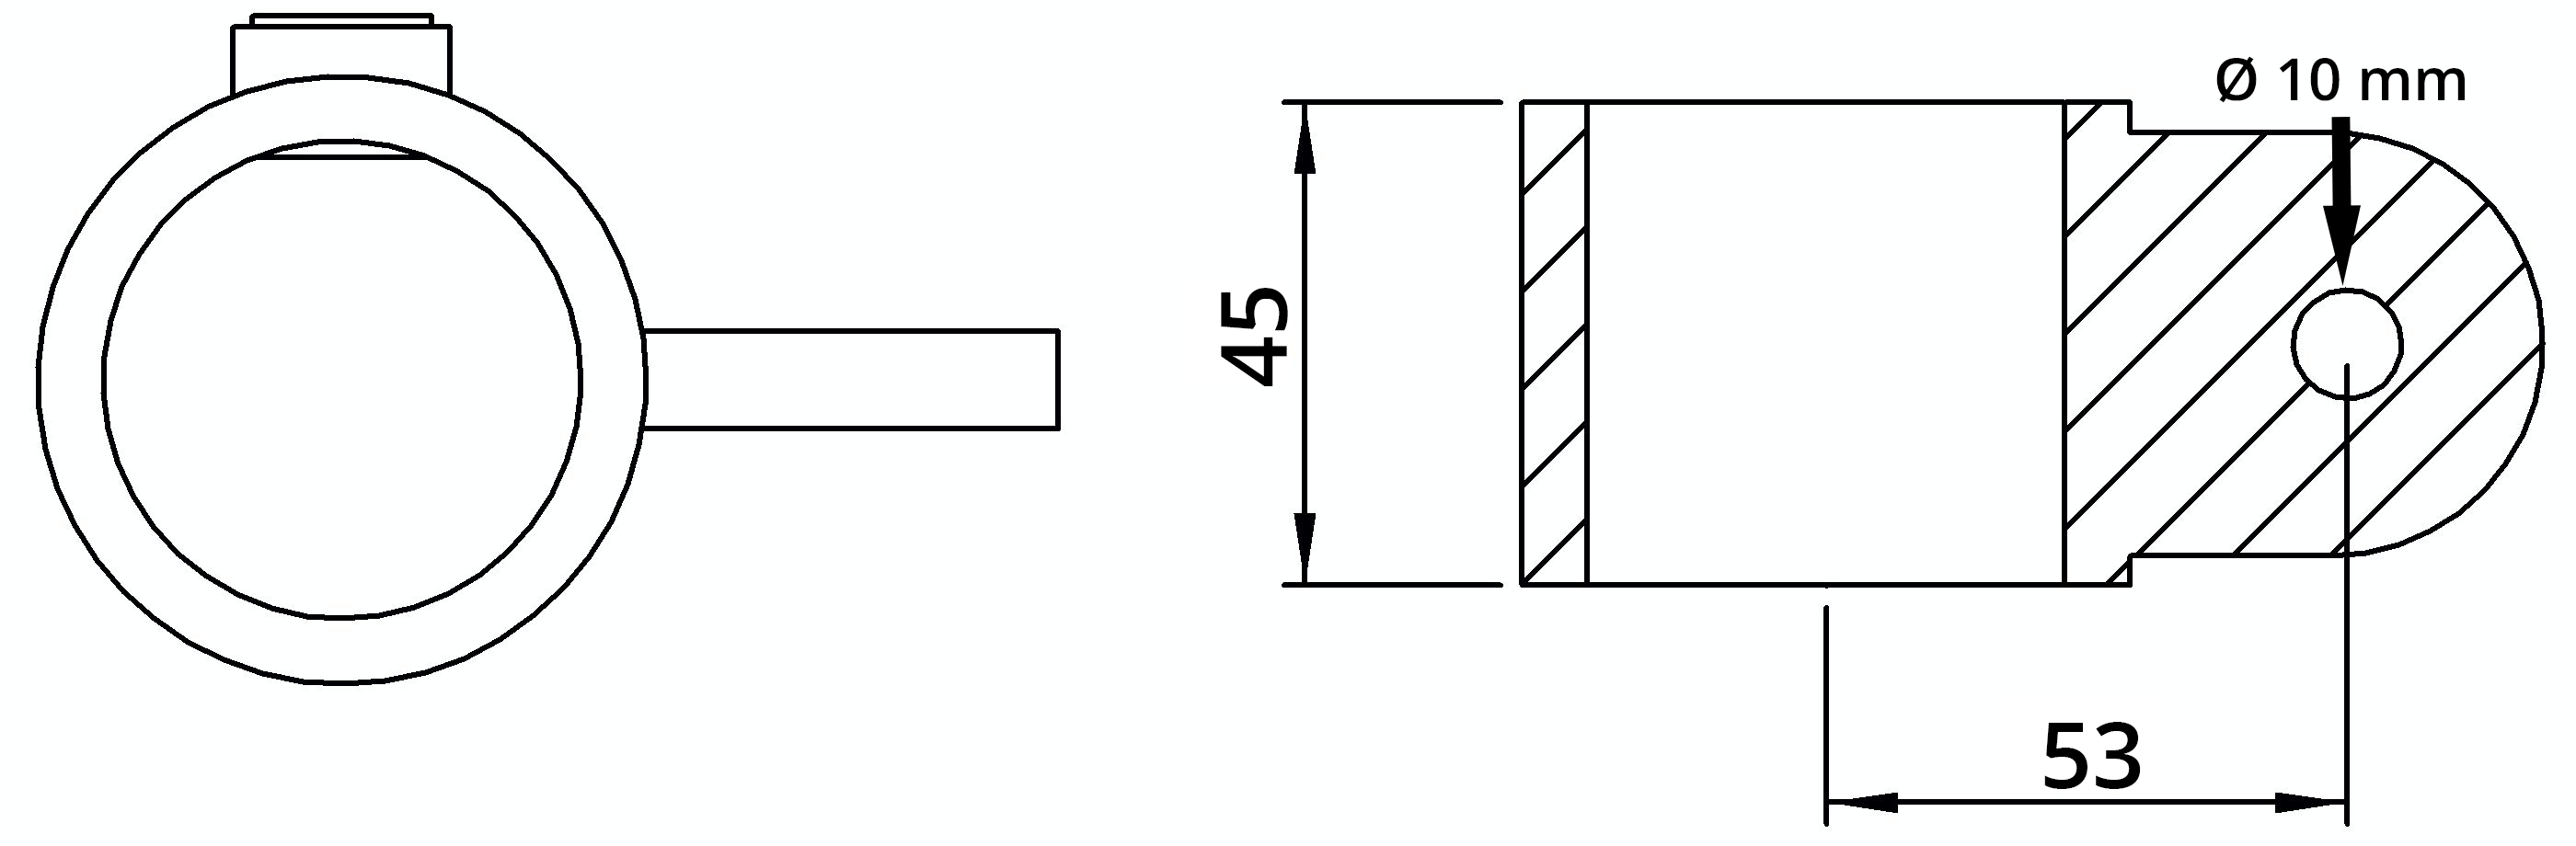 Rohrverbinder | Gelenkauge einfach | 173MD48 | 48,3 mm | 1 1/2" | Feuerverzinkt u. Elektrogalvanisiert